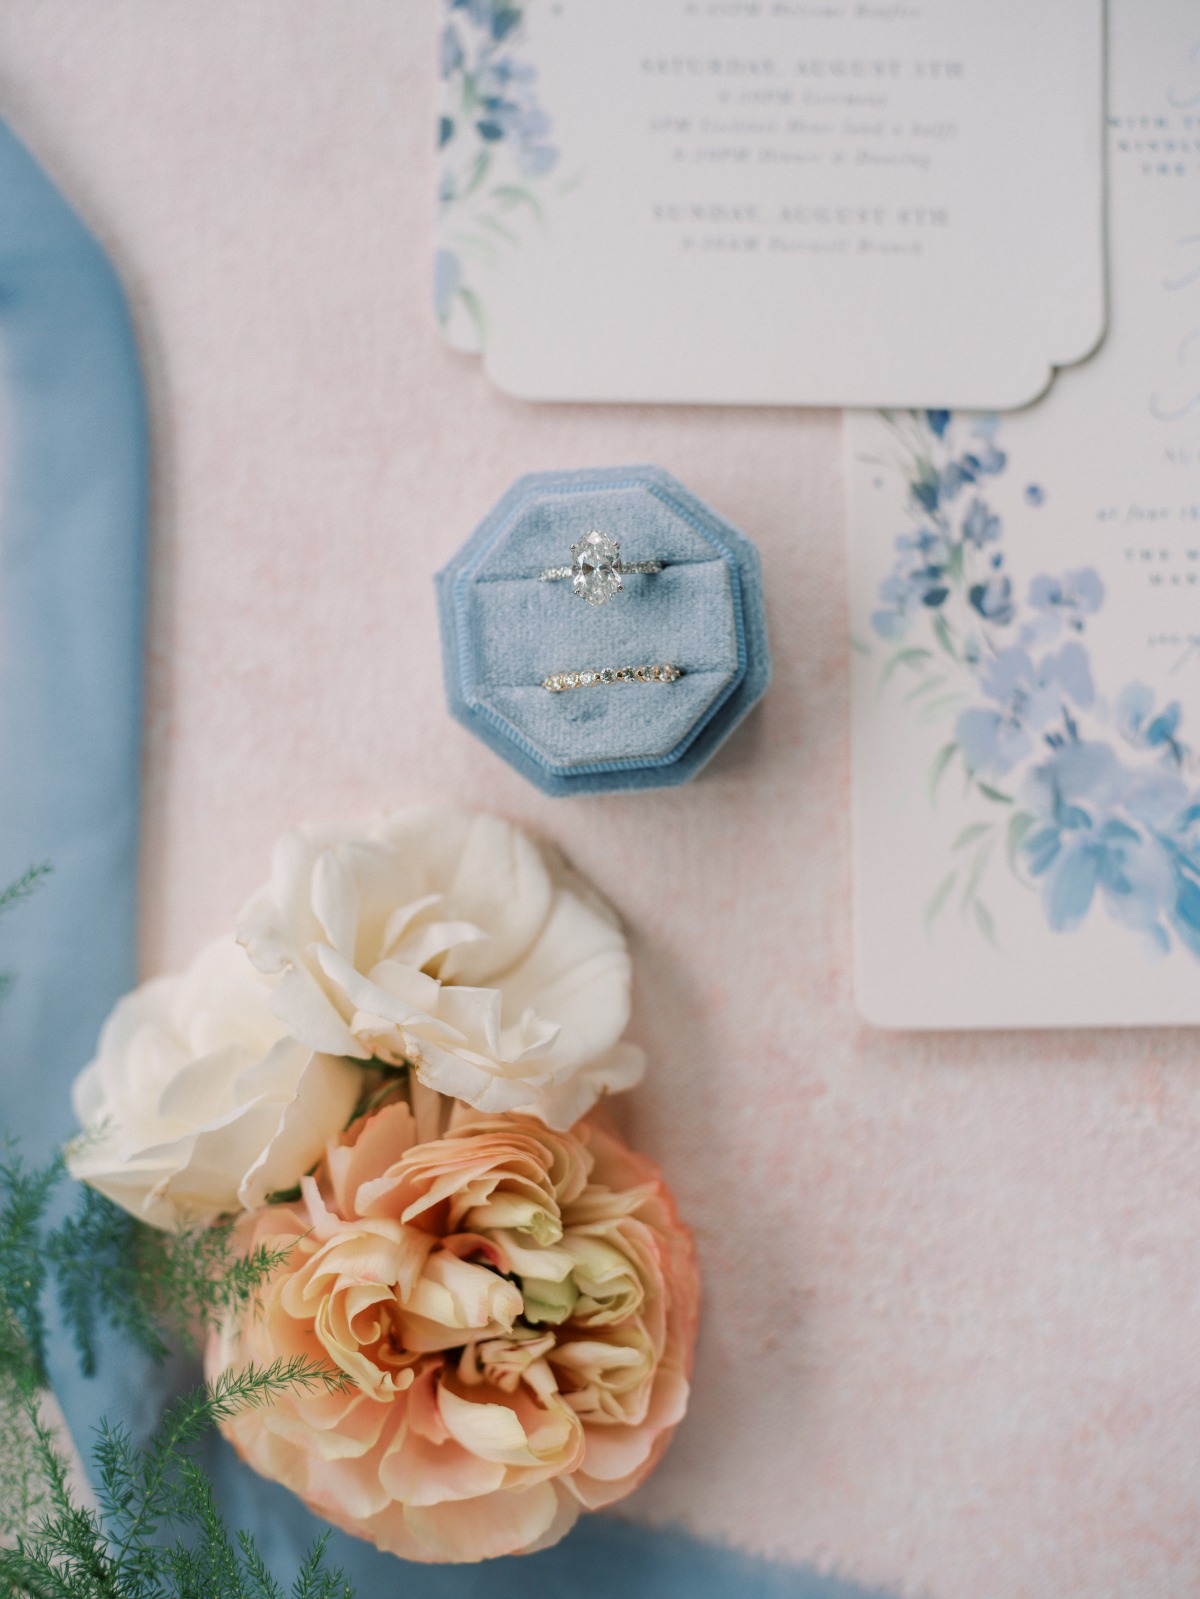 Light blue velvet wedding ring box for wedding day photos 